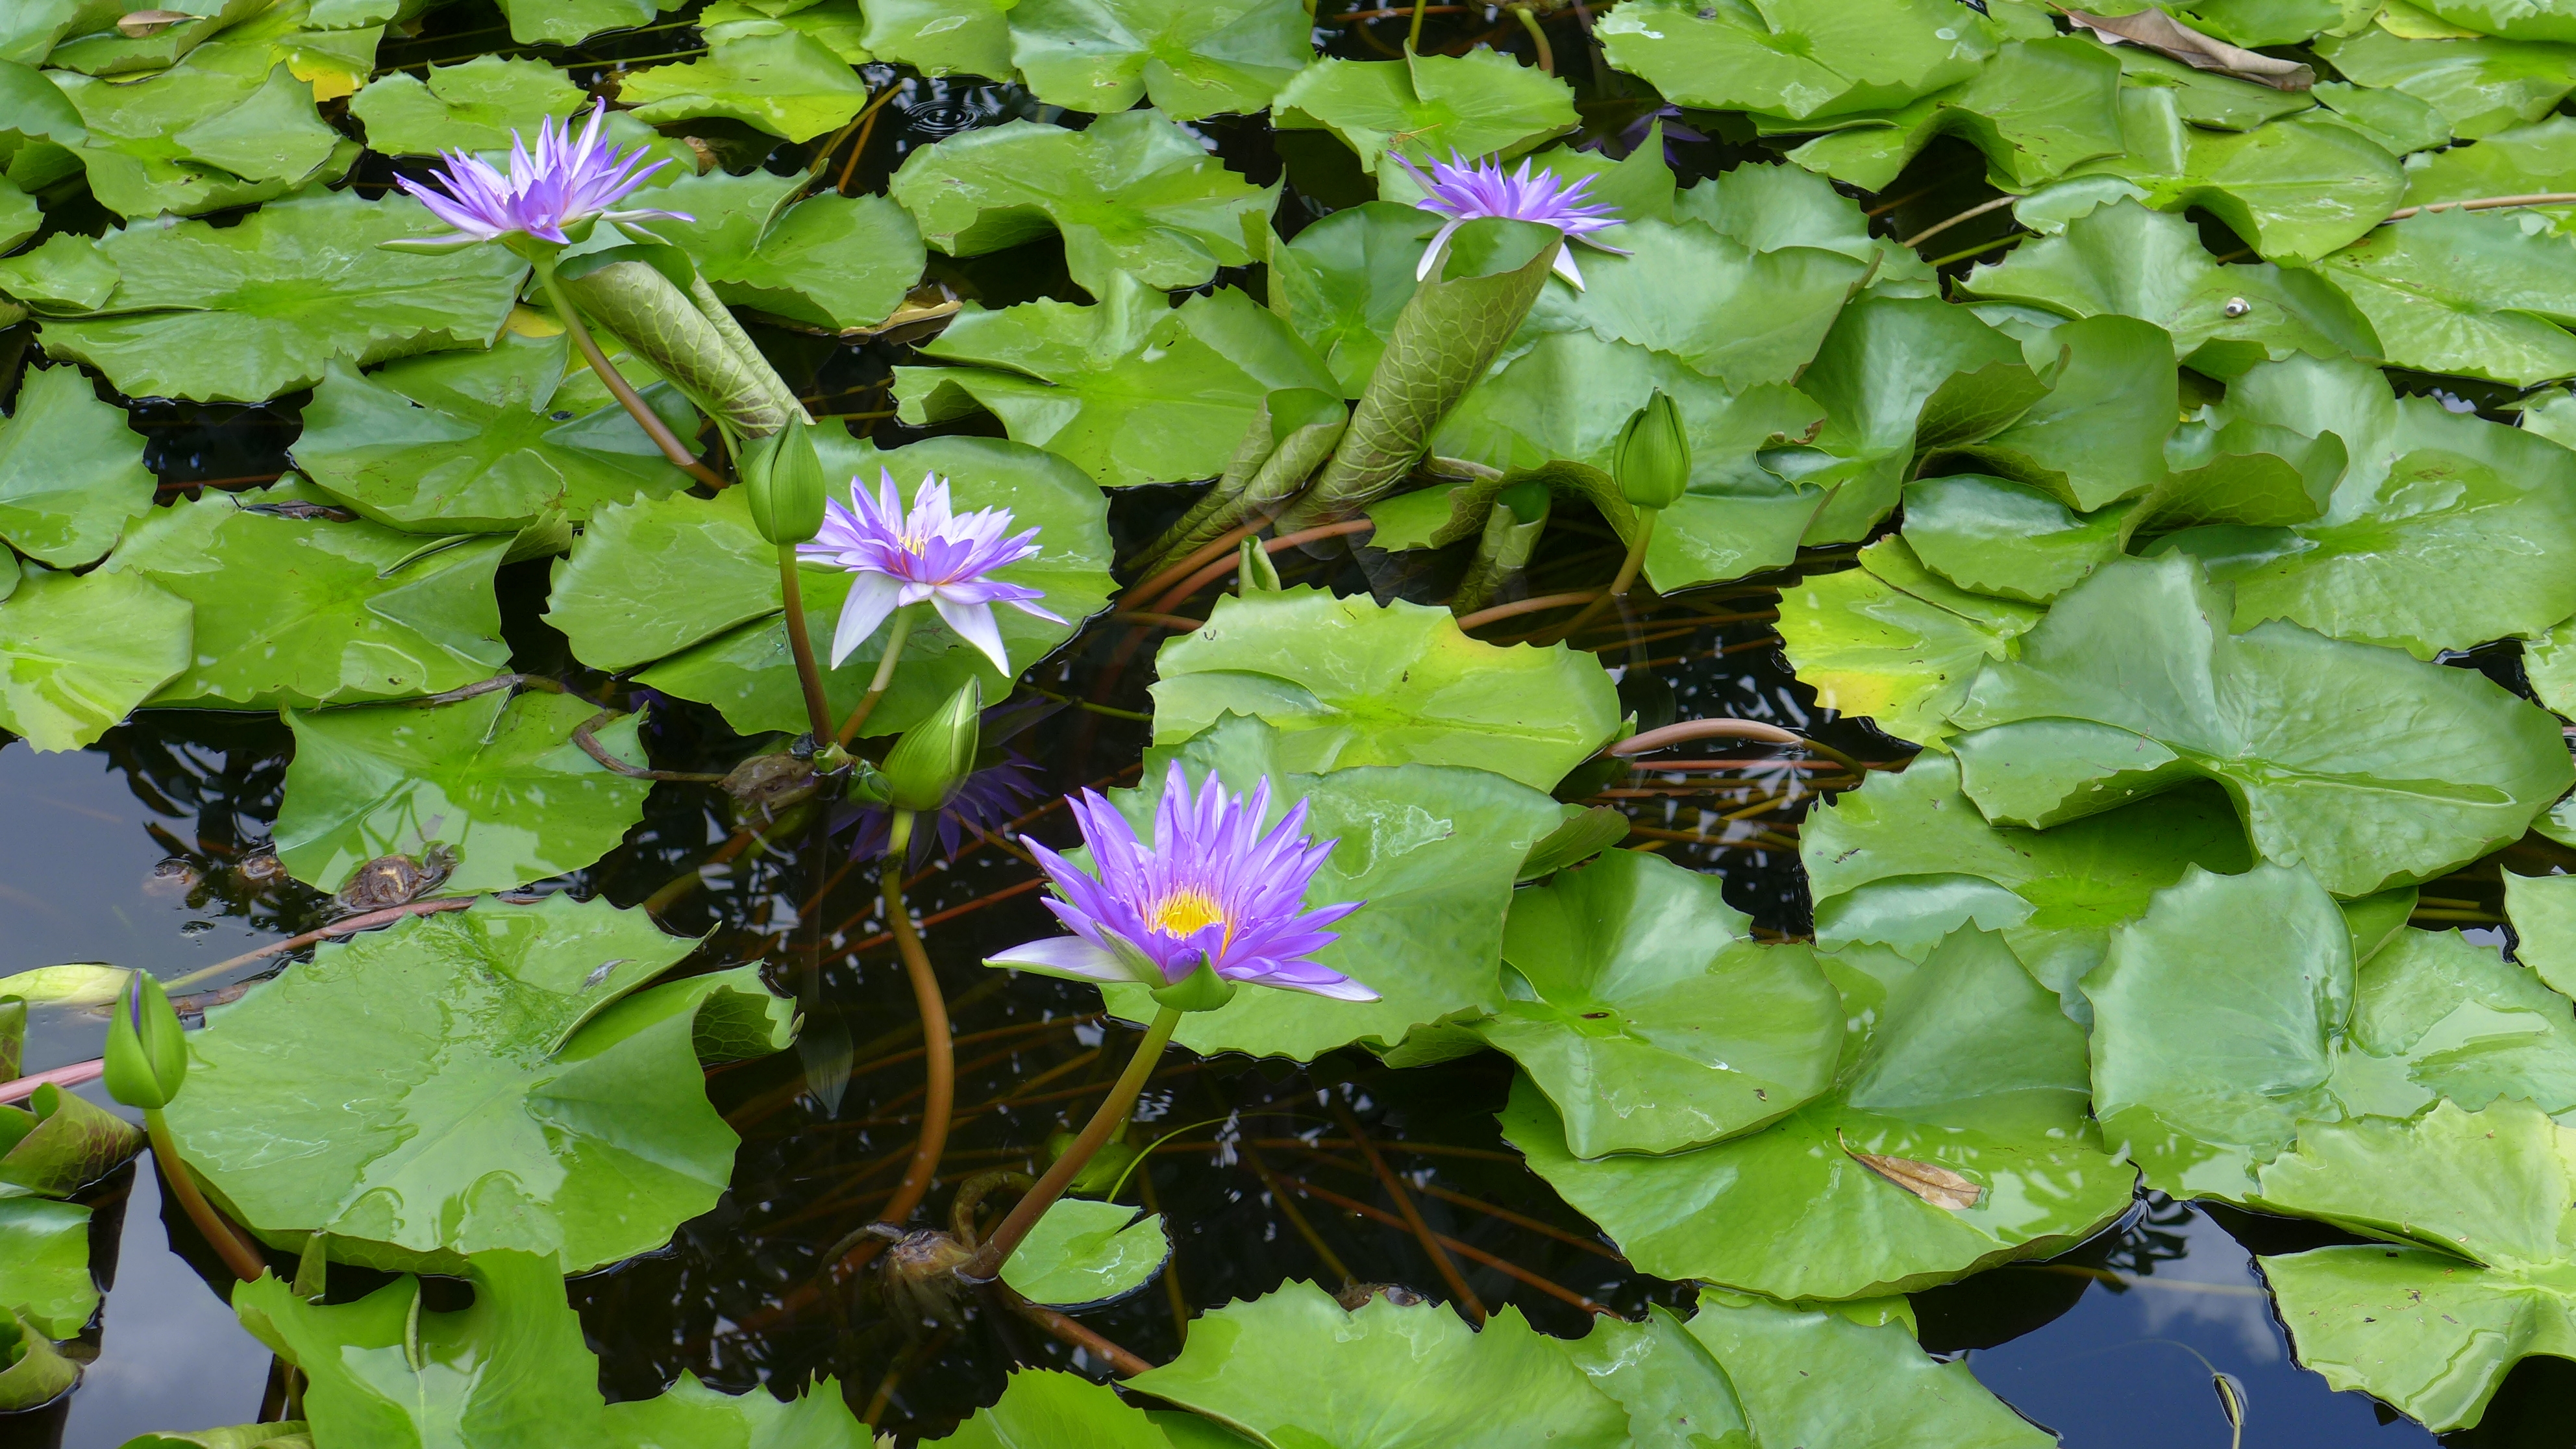 purple lotus flowers growing in water